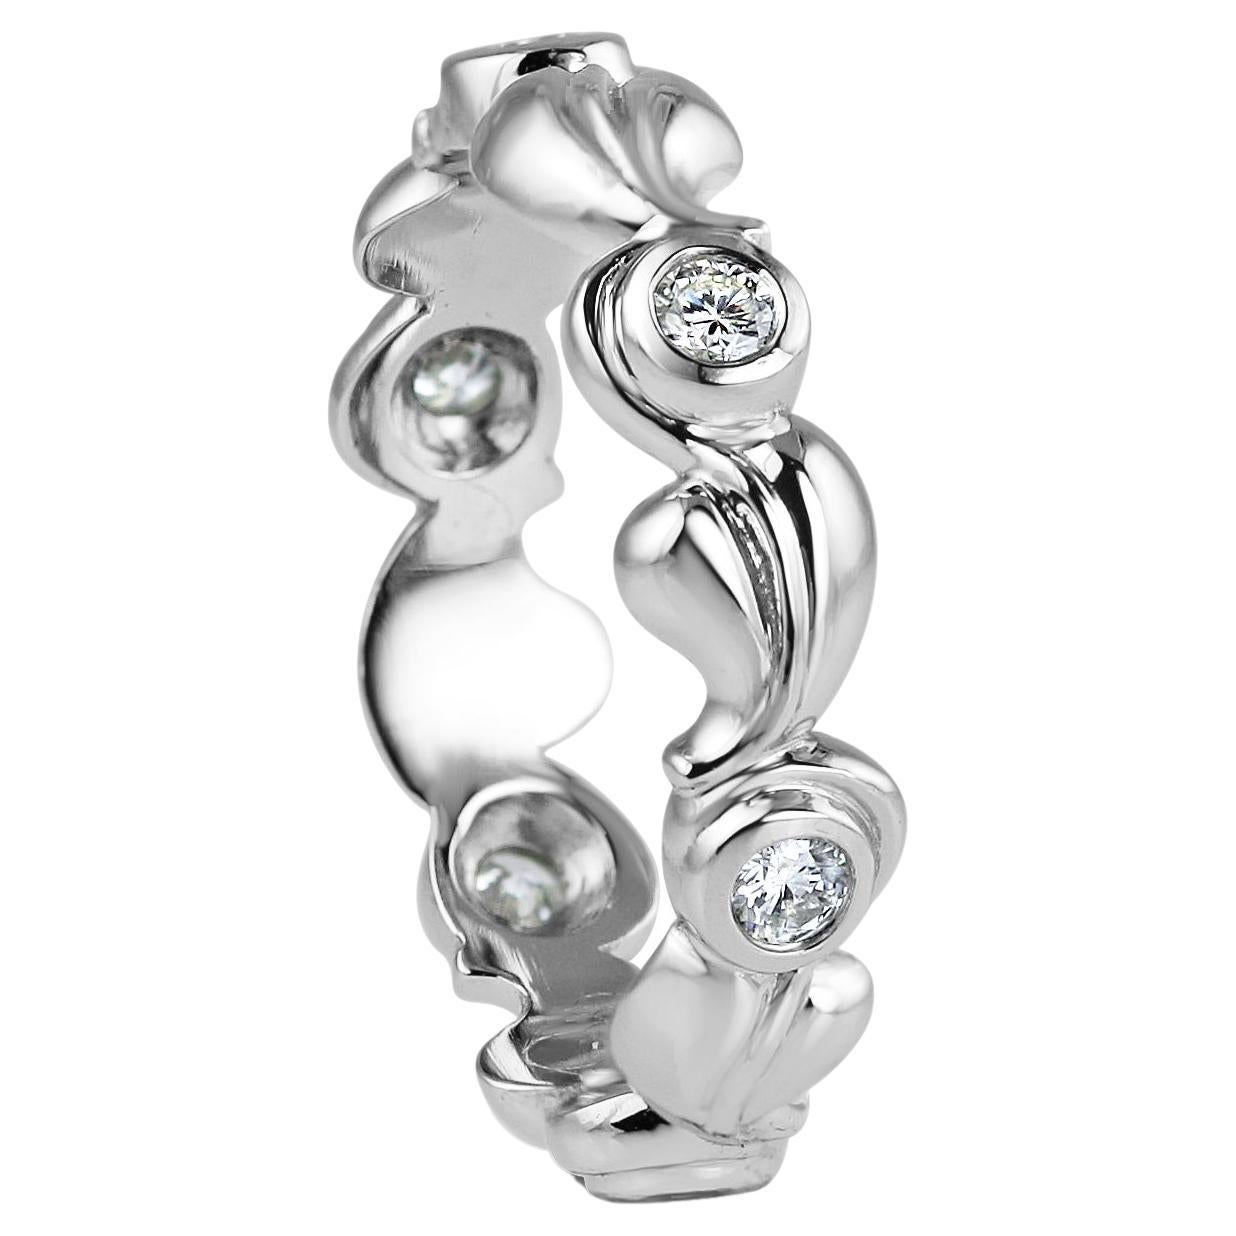 KATA Grace, alliance moderne en platine avec diamants blancs taille brillant de 0,24 carat